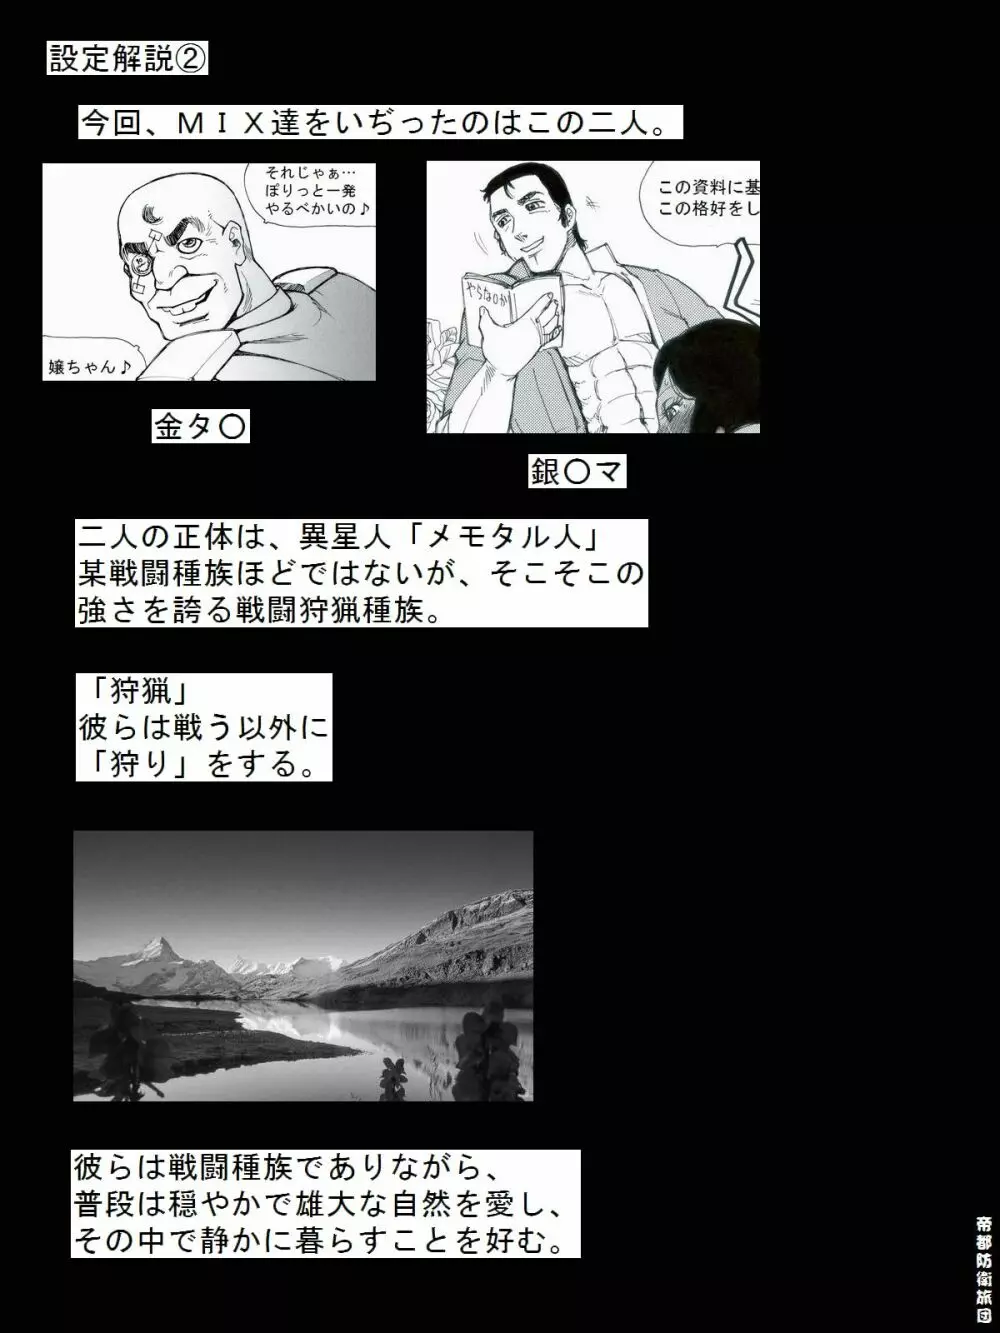 [帝都防衛旅団] RTKBOOK 9-3 「M○Xいぢり(3) 『PANPAN-MAN』」 26ページ